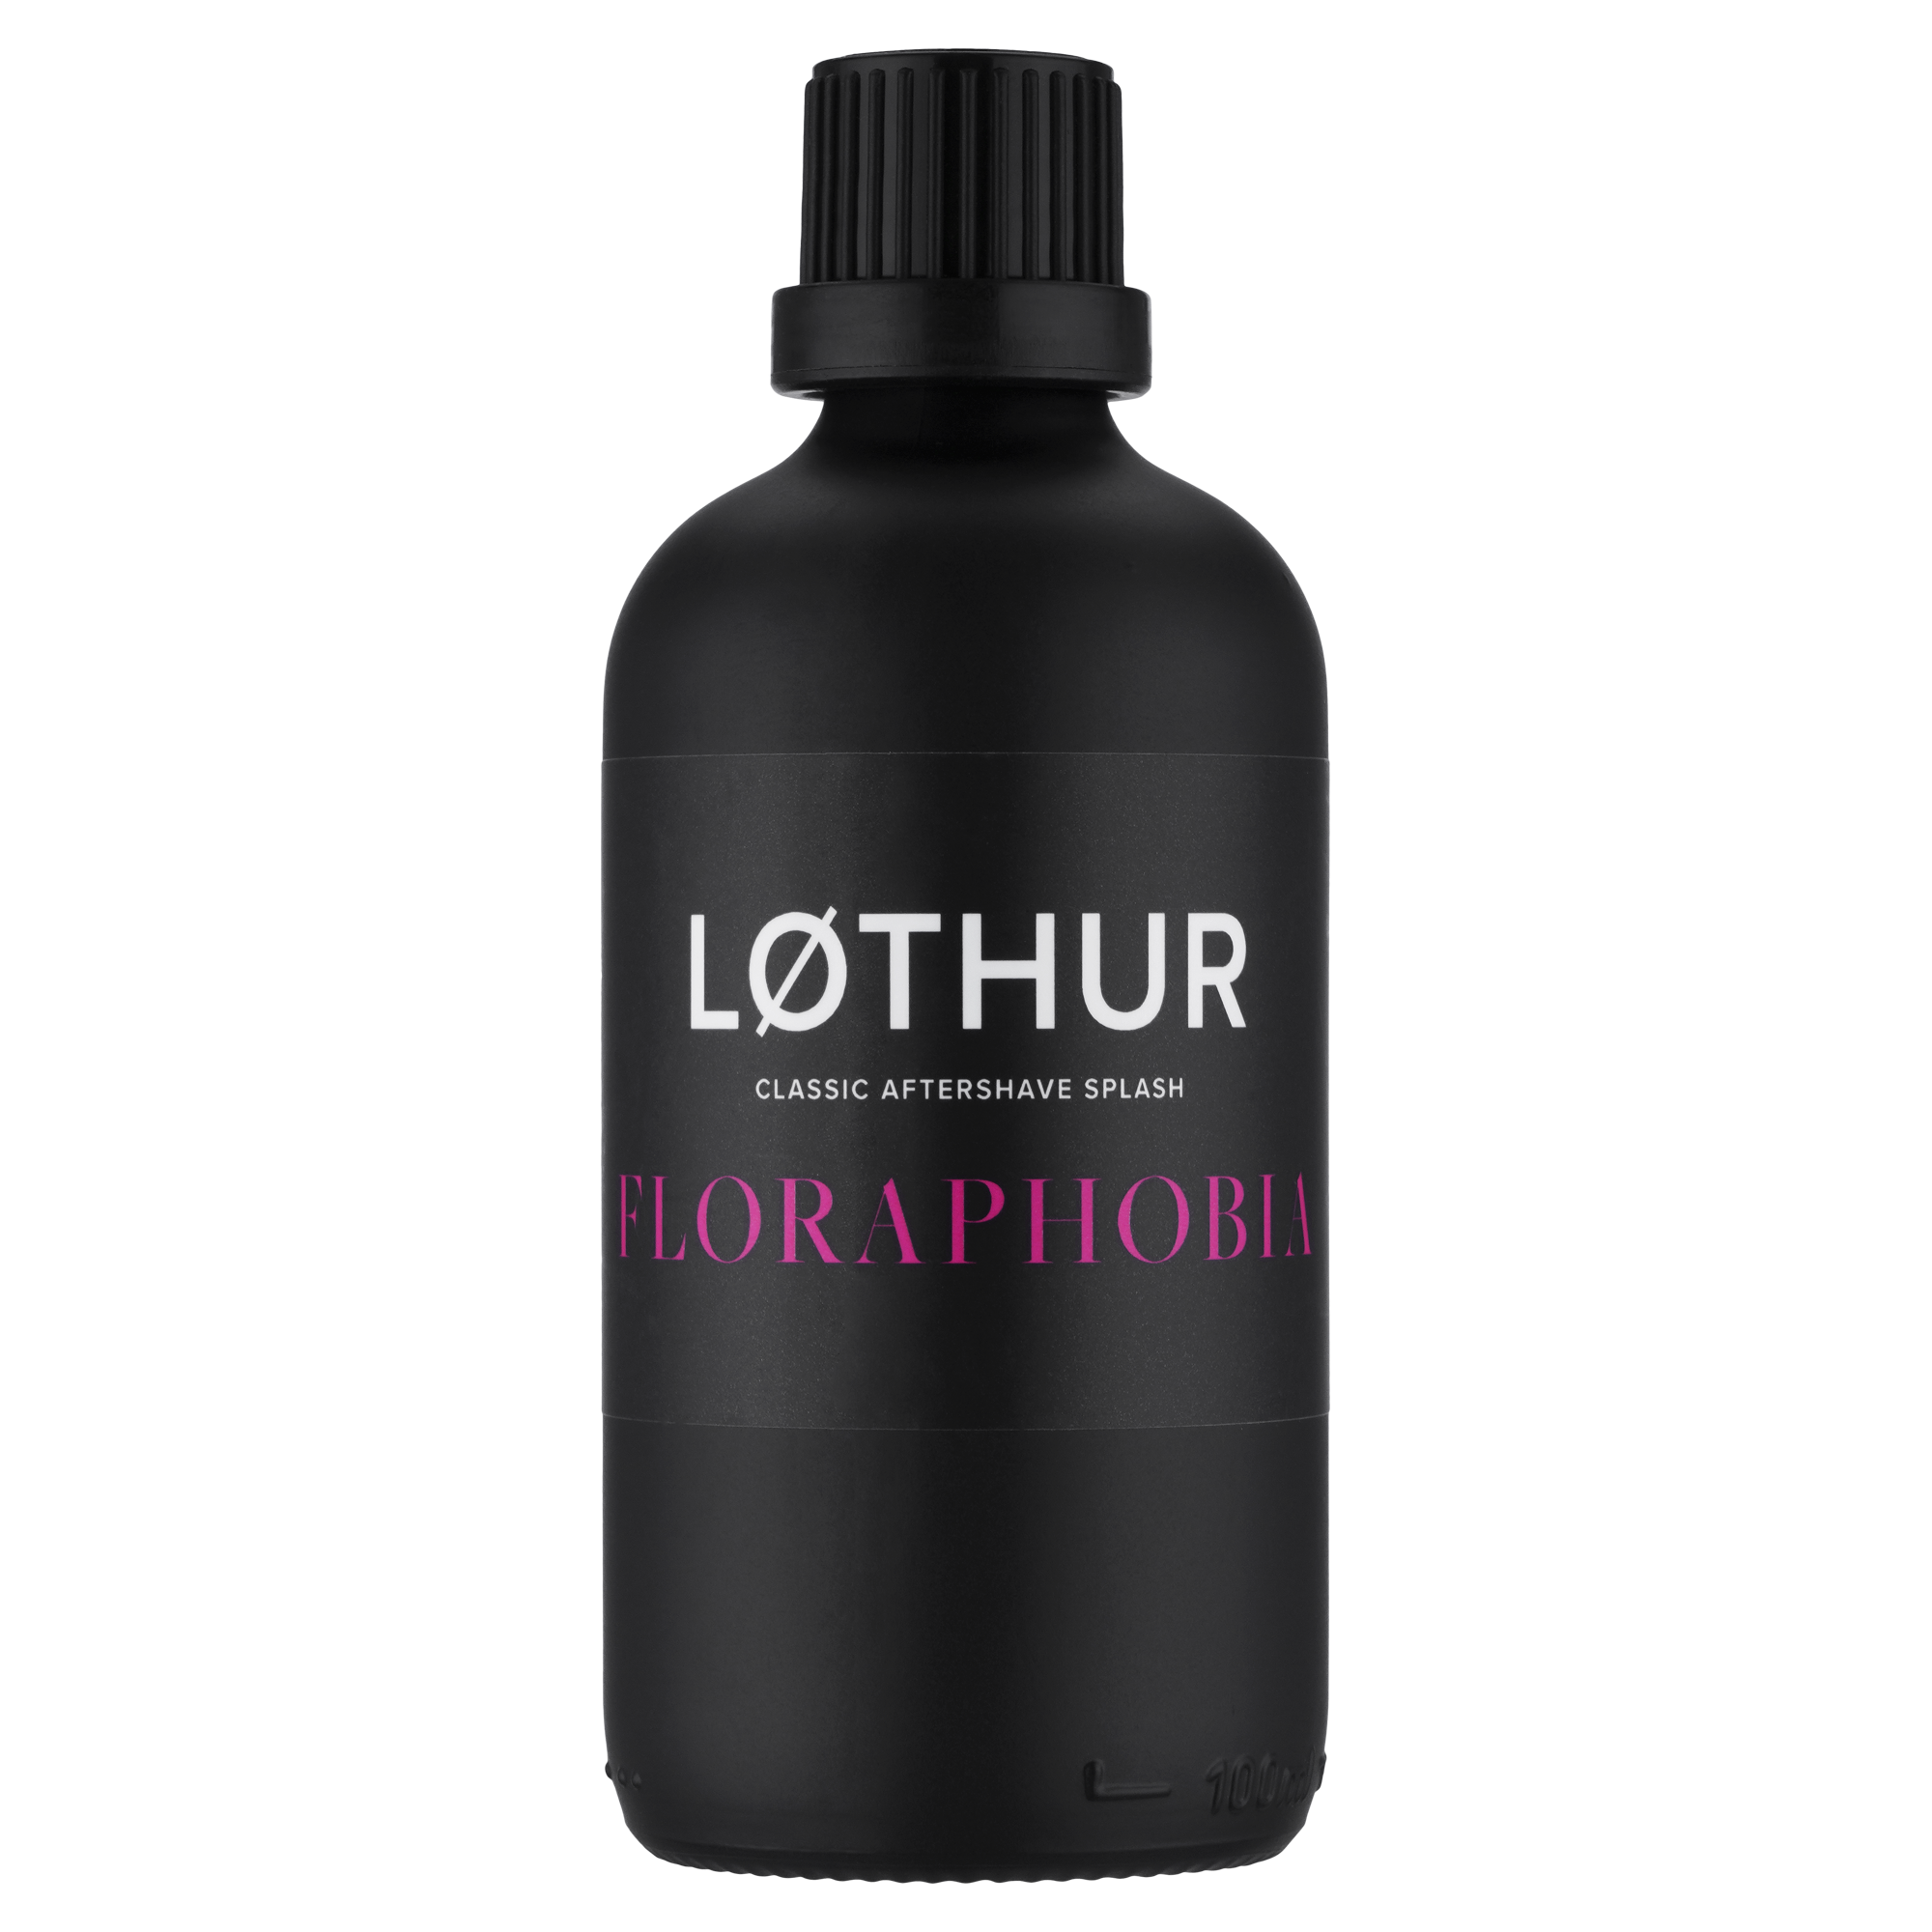 Løthur Floraphobia Aftershave